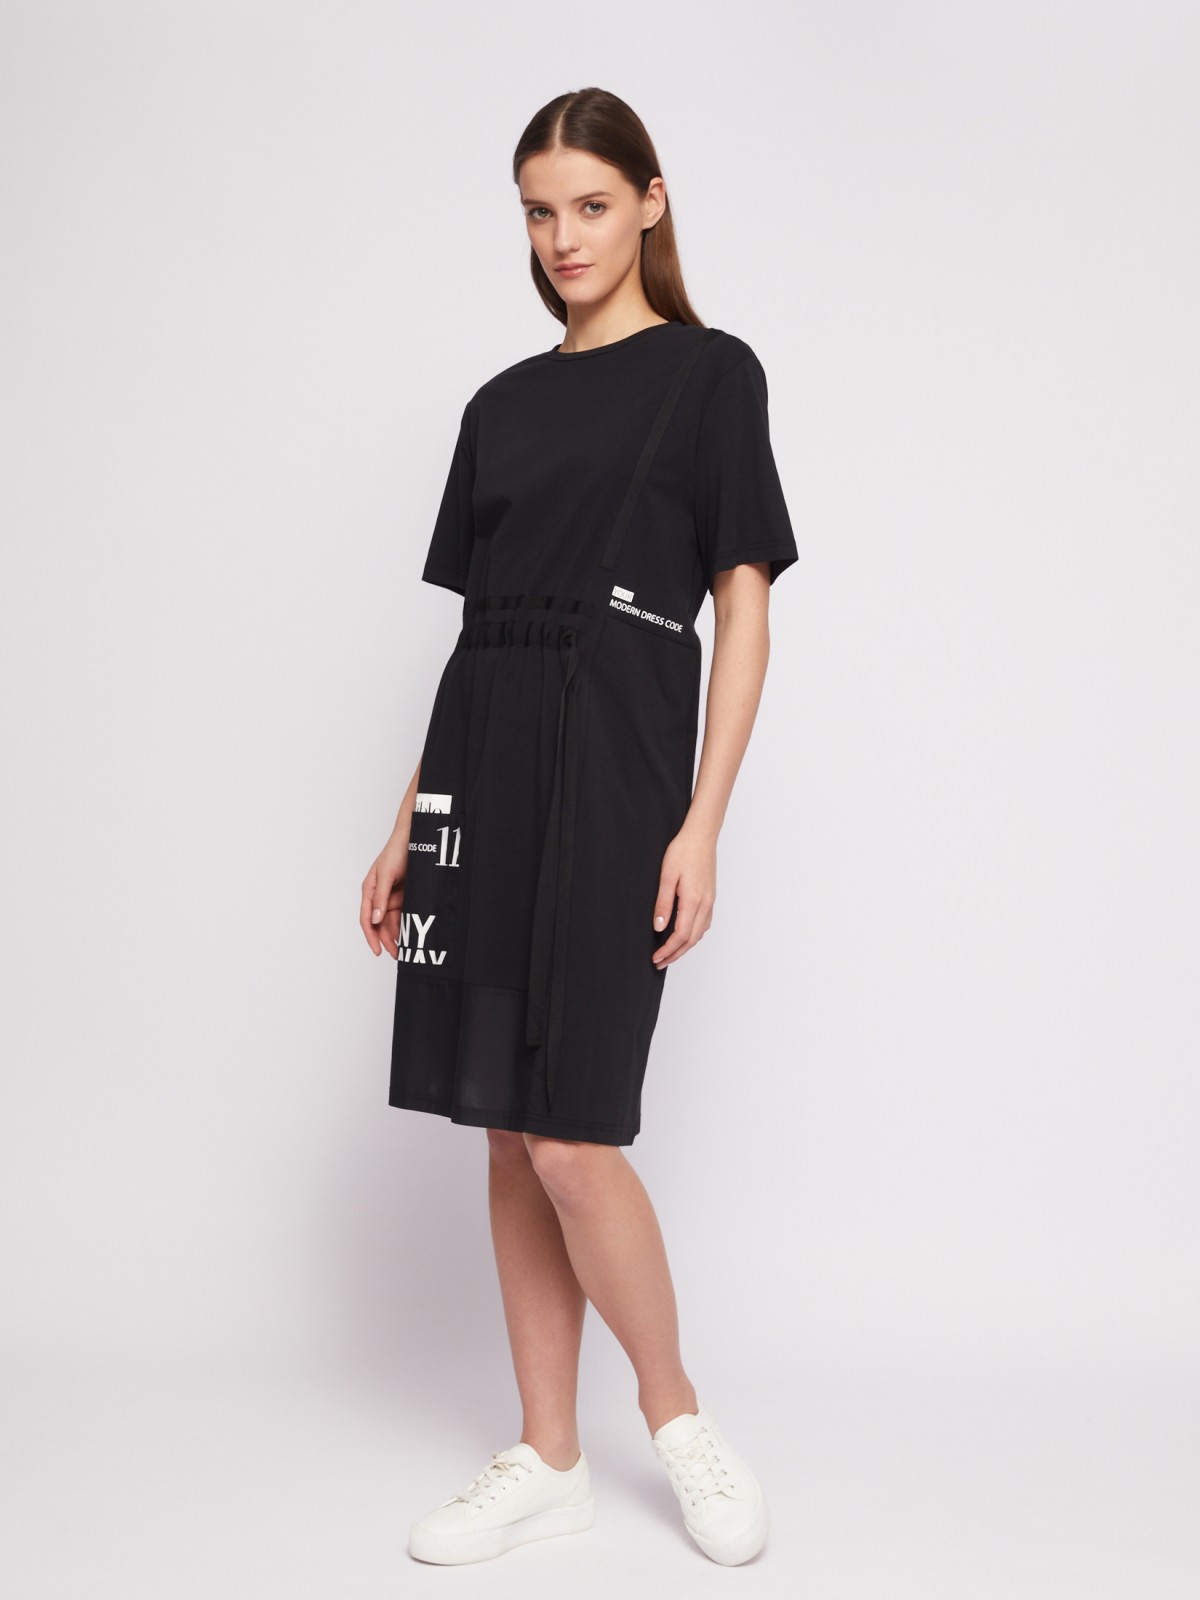 Платье-футболка из хлопка с завязками на талии zolla 024218139021, цвет черный, размер S - фото 2